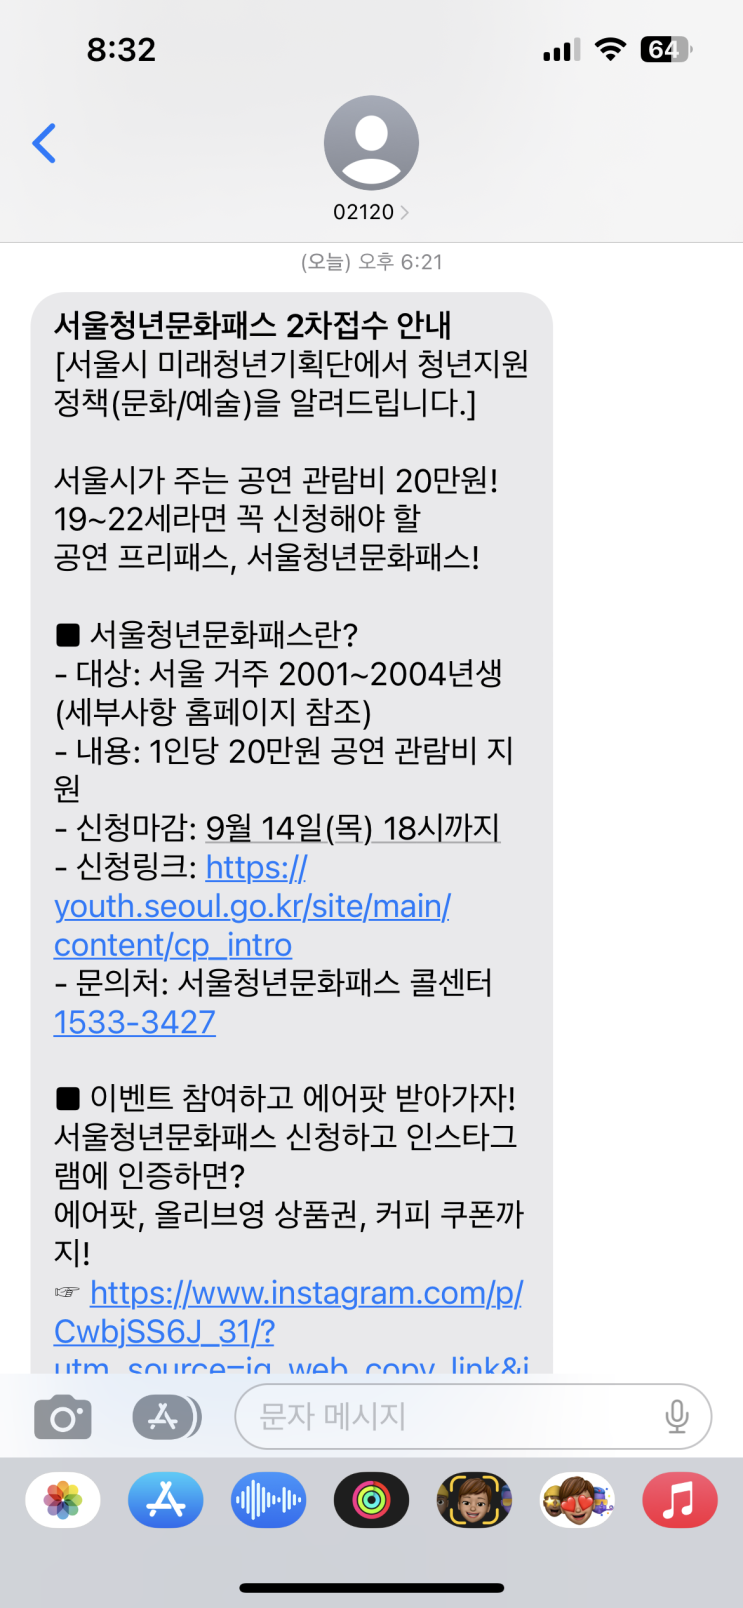 &lt;서울청년문화패스 2차&gt; 신청하는 방법 20만원 꽁돈 겟또